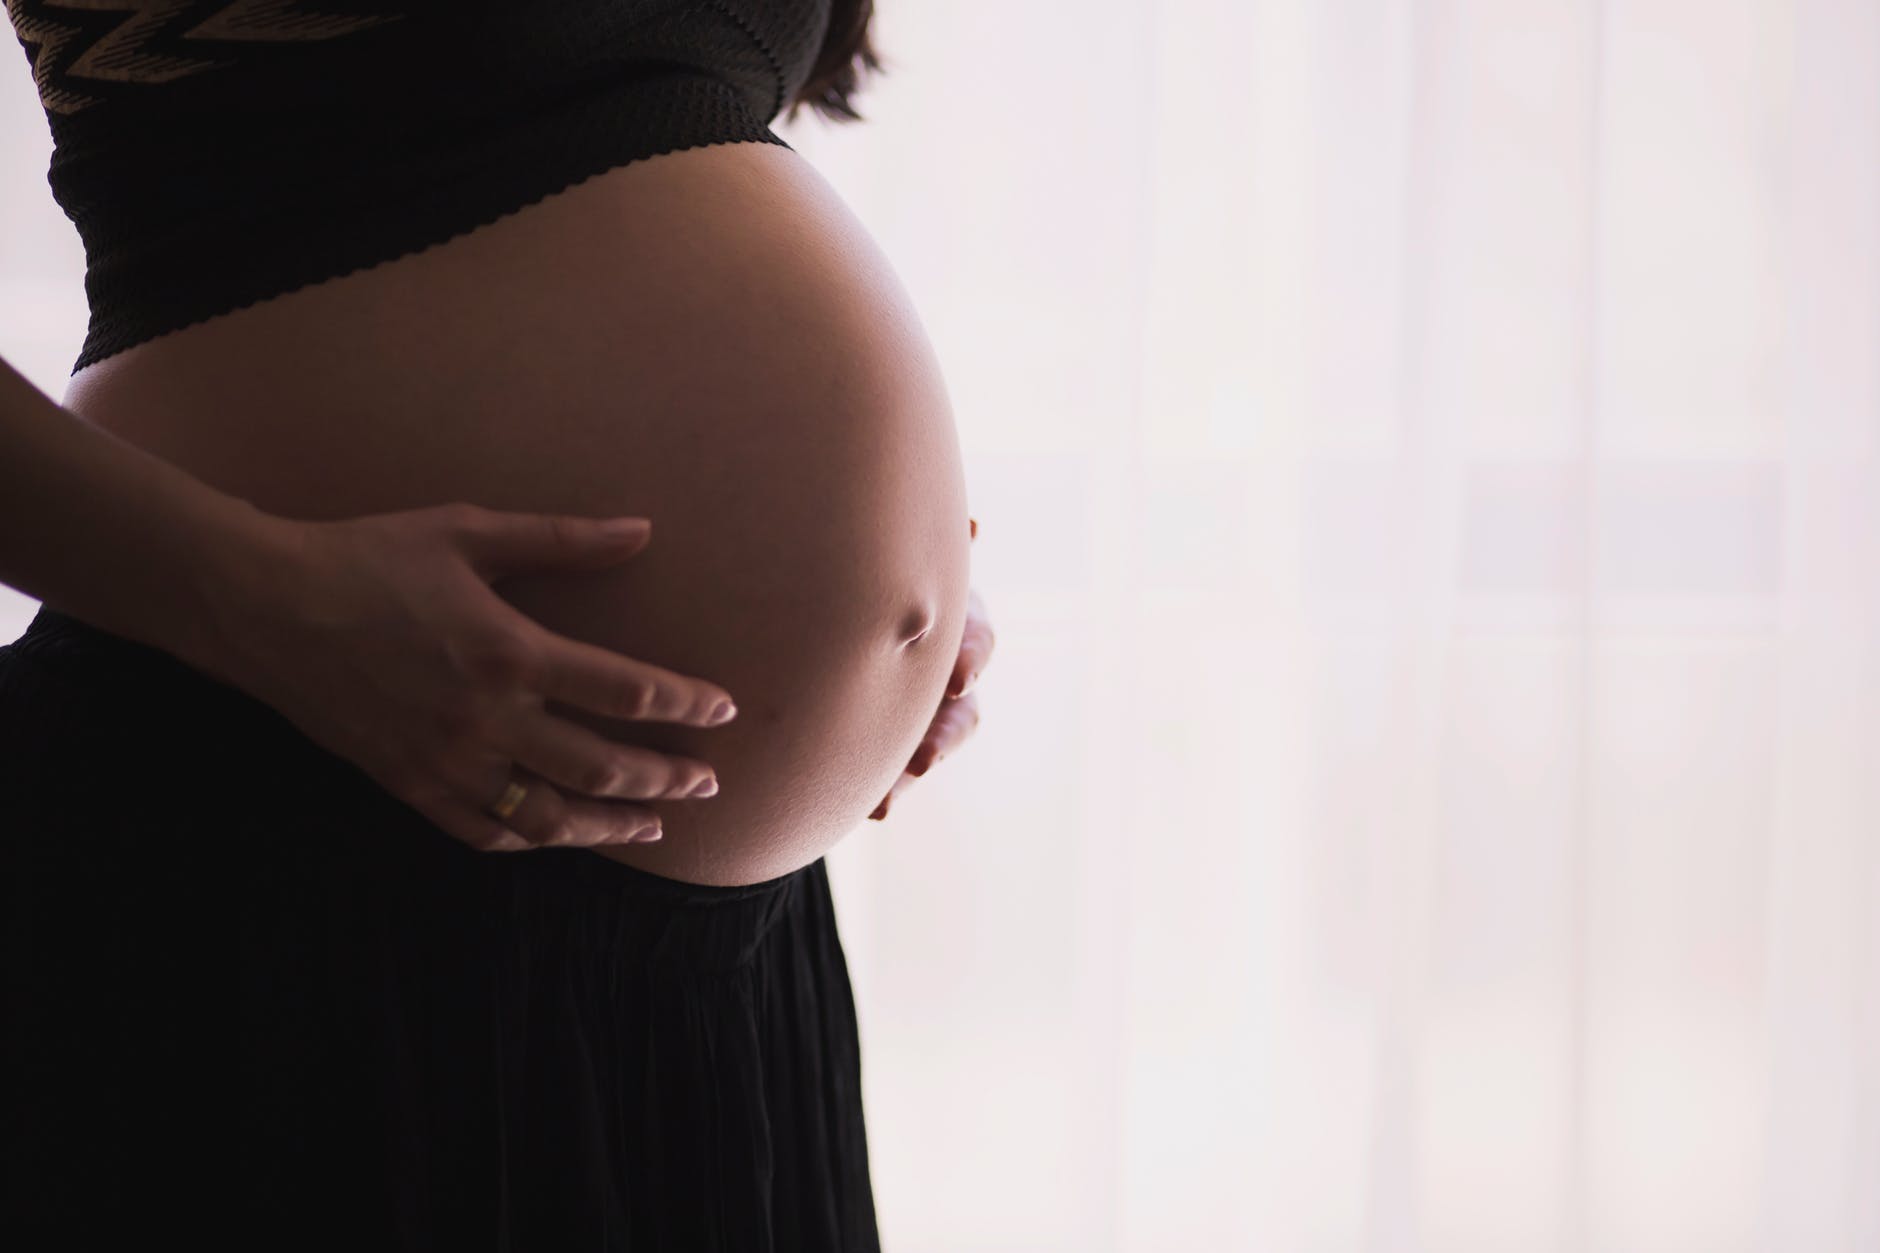 Τι πρέπει να προσέξει μία έγκυος που ταξιδεύει;